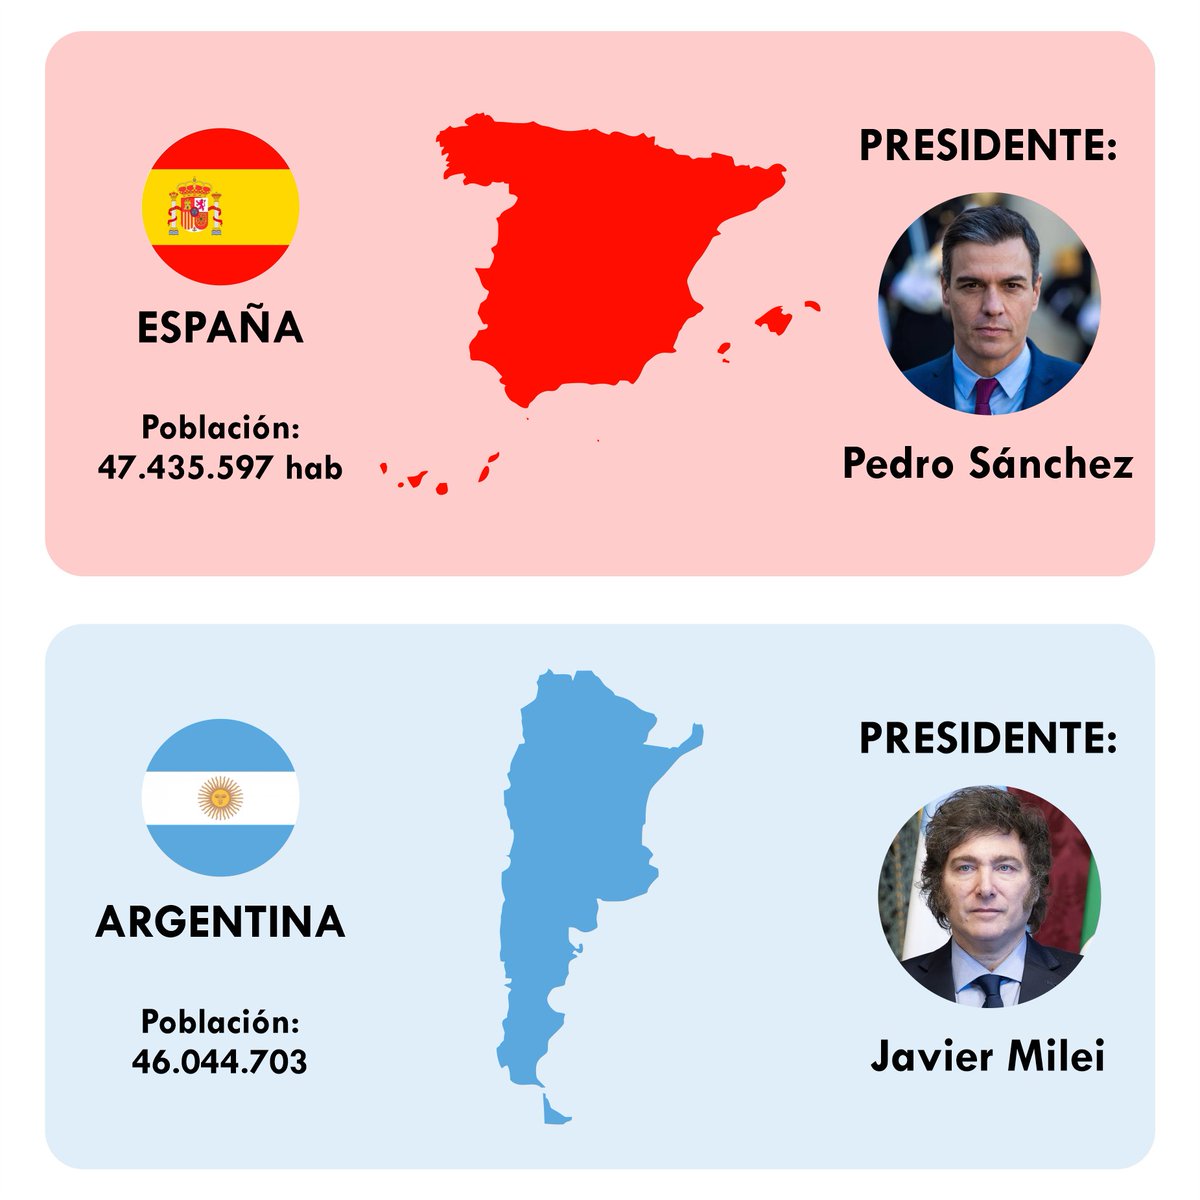 Todos los izquierdistas de Argentina y España pasan a ser gobernados por Pedro Sánchez. Todos los liberales y conservadores pasan a ser gobernados por Javier Milei. Les damos dos décadas de margen para desarrollar sus políticas: ¿qué país sería más próspero?